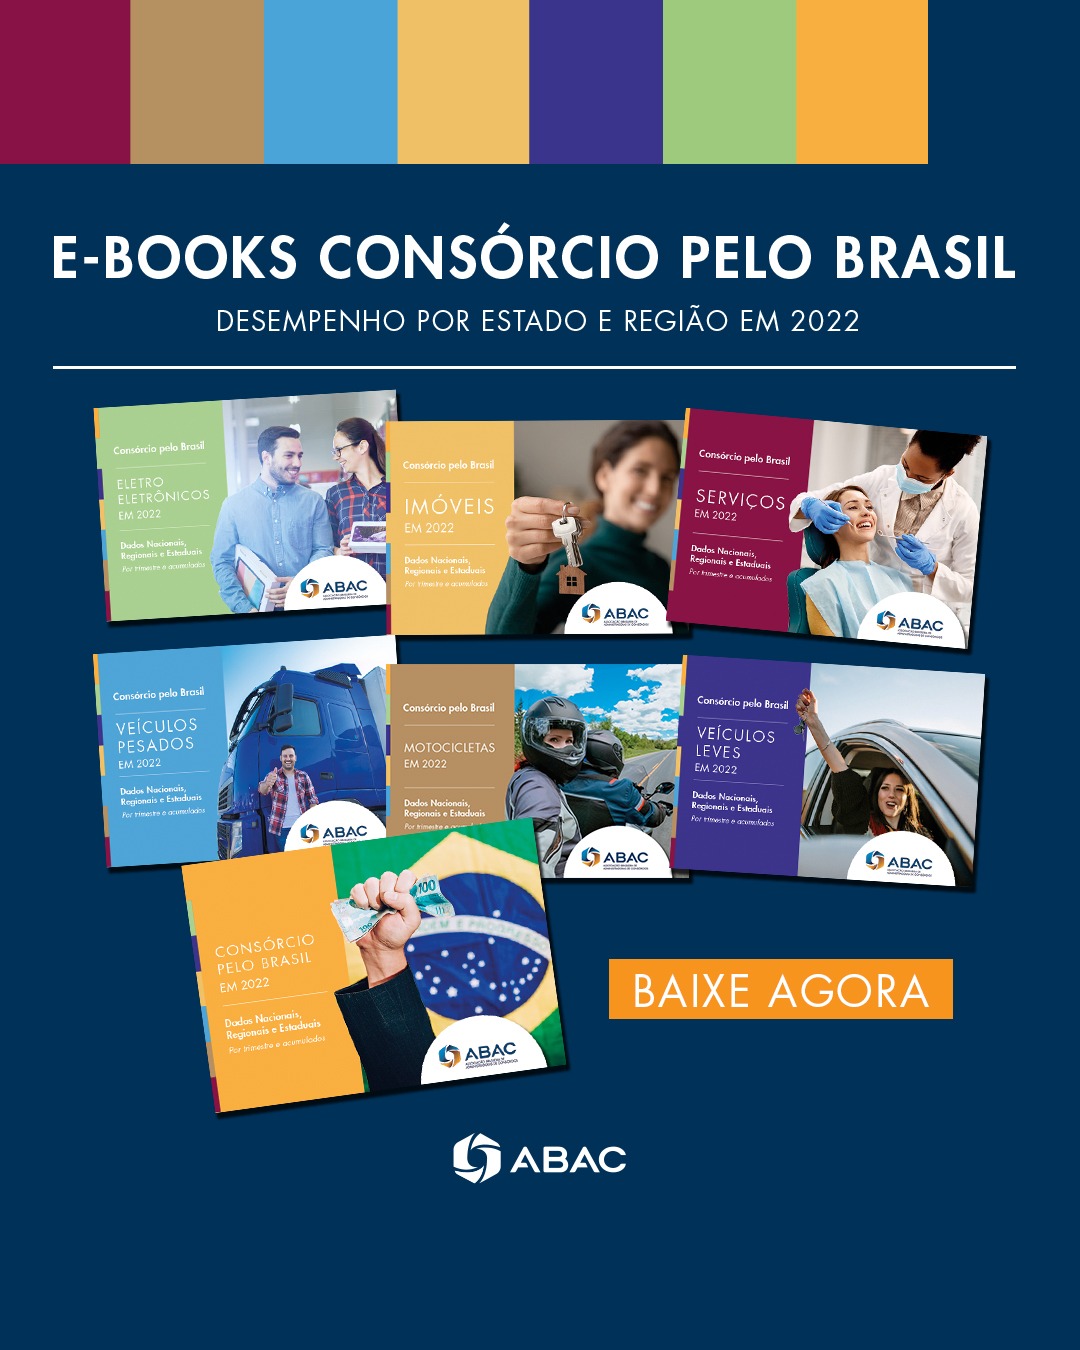 Consórcio pelo Brasil - Todos os e-books